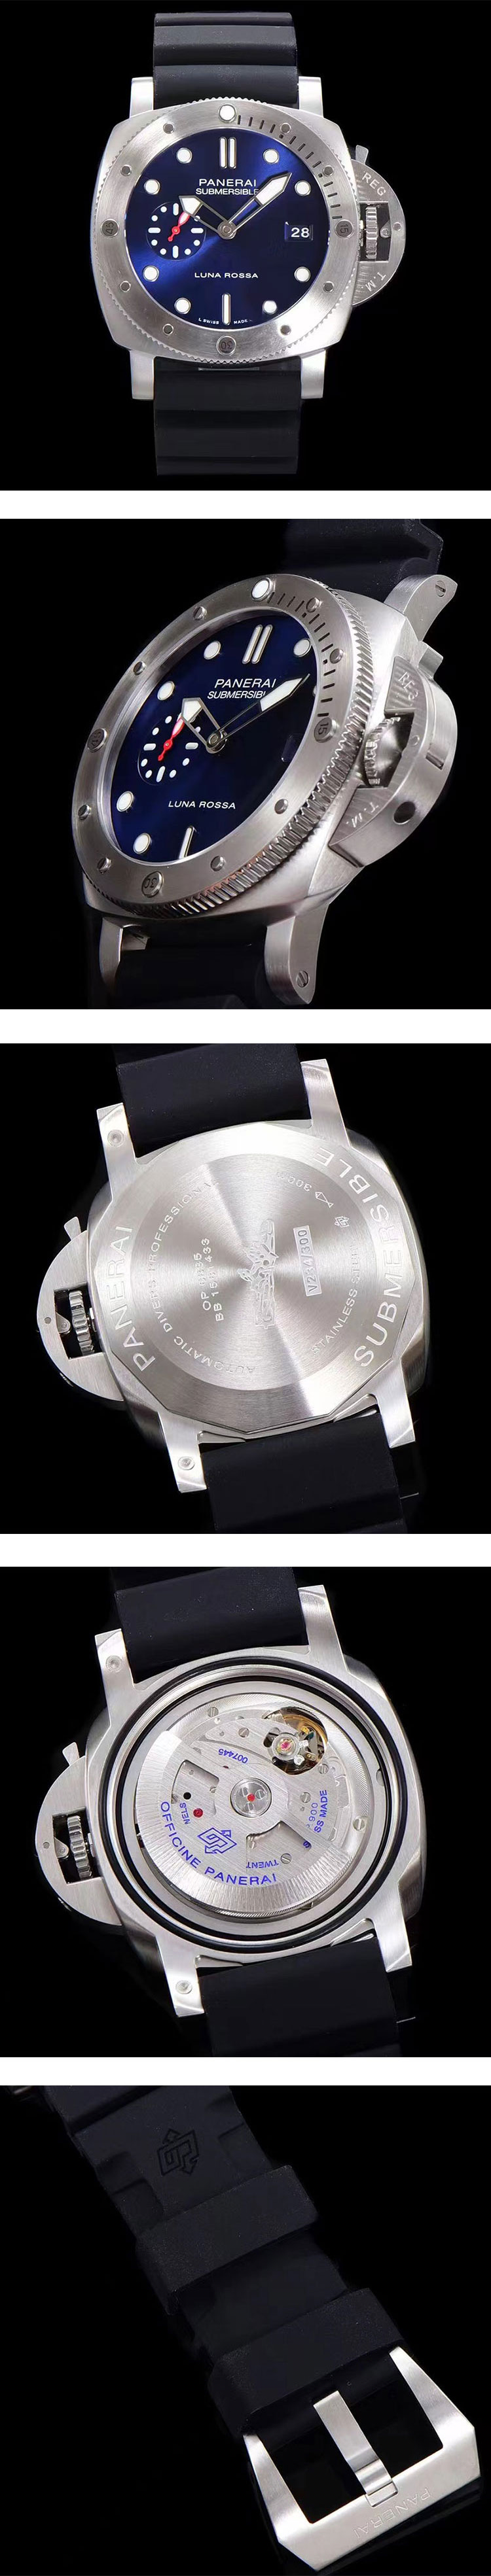 超人気パネライコピー サブマーシブル クアランタクアトロ ルナ・ロッサ PAM0139 高品質ブランド時計コピー